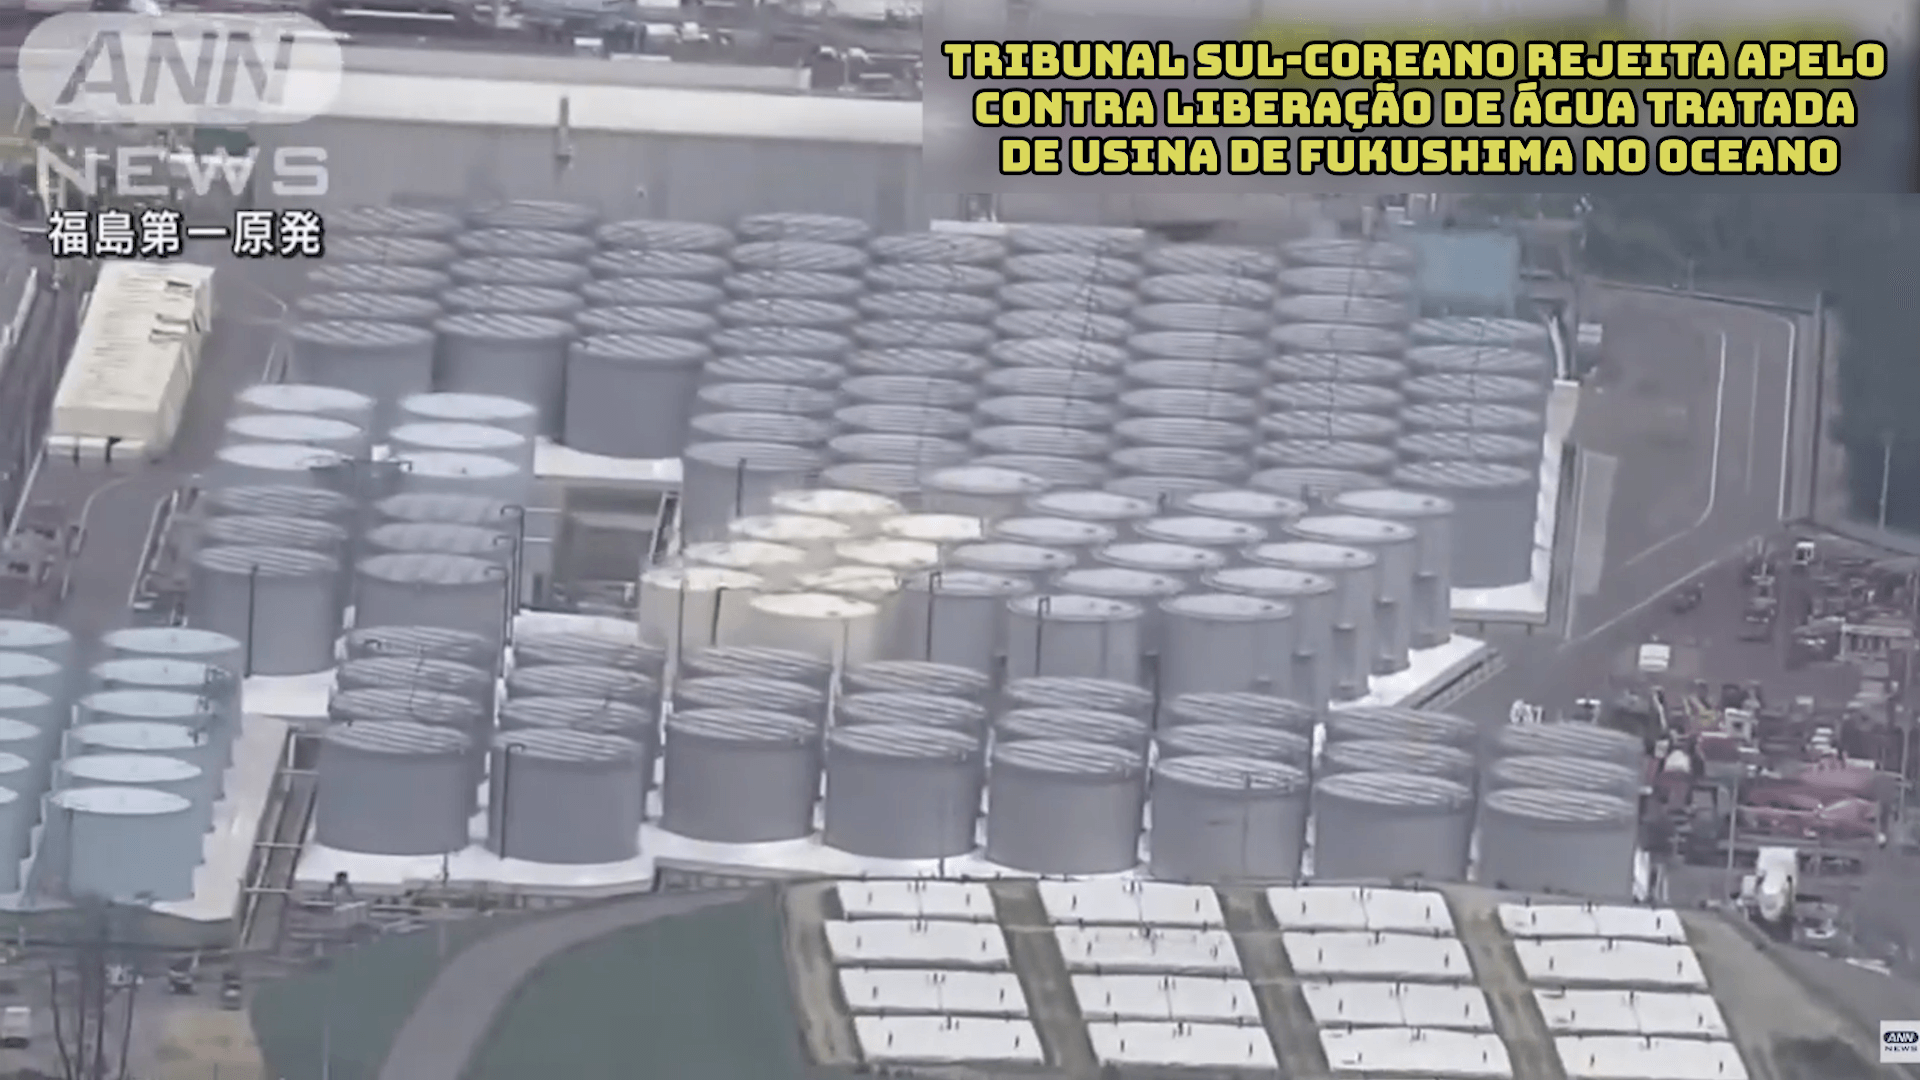 Tribunal sul-coreano rejeita apelo contra liberação de água tratada de usina de Fukushima no oceano